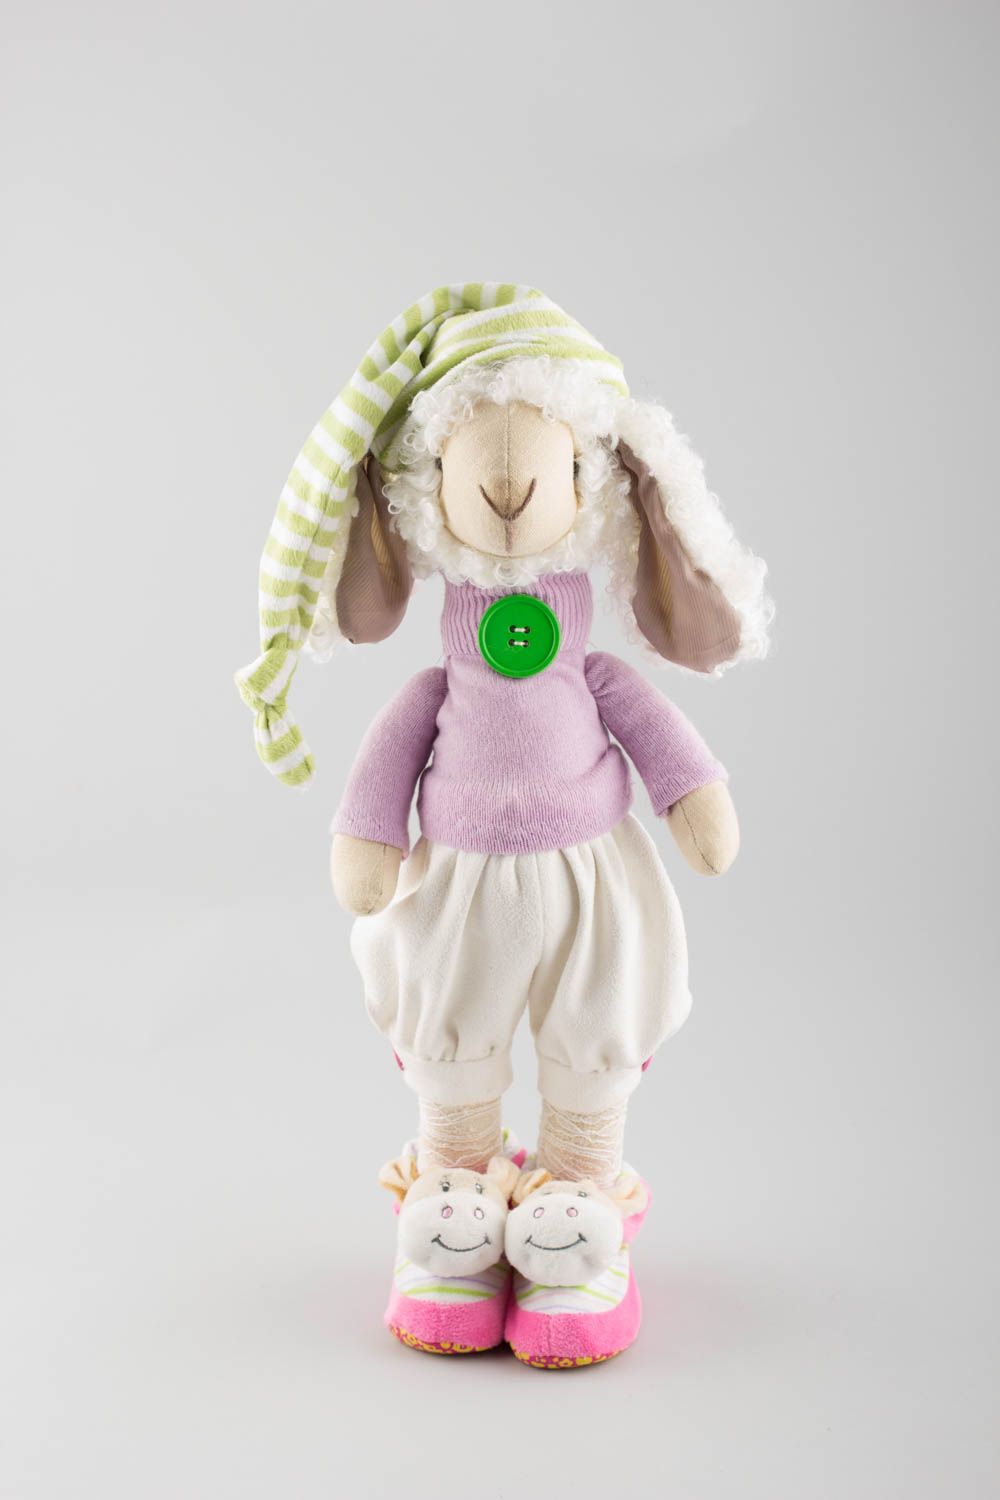 Textil Kuscheltier Schaf künstlerisch niedlich Spielzeug für Kinder und Deko foto 2